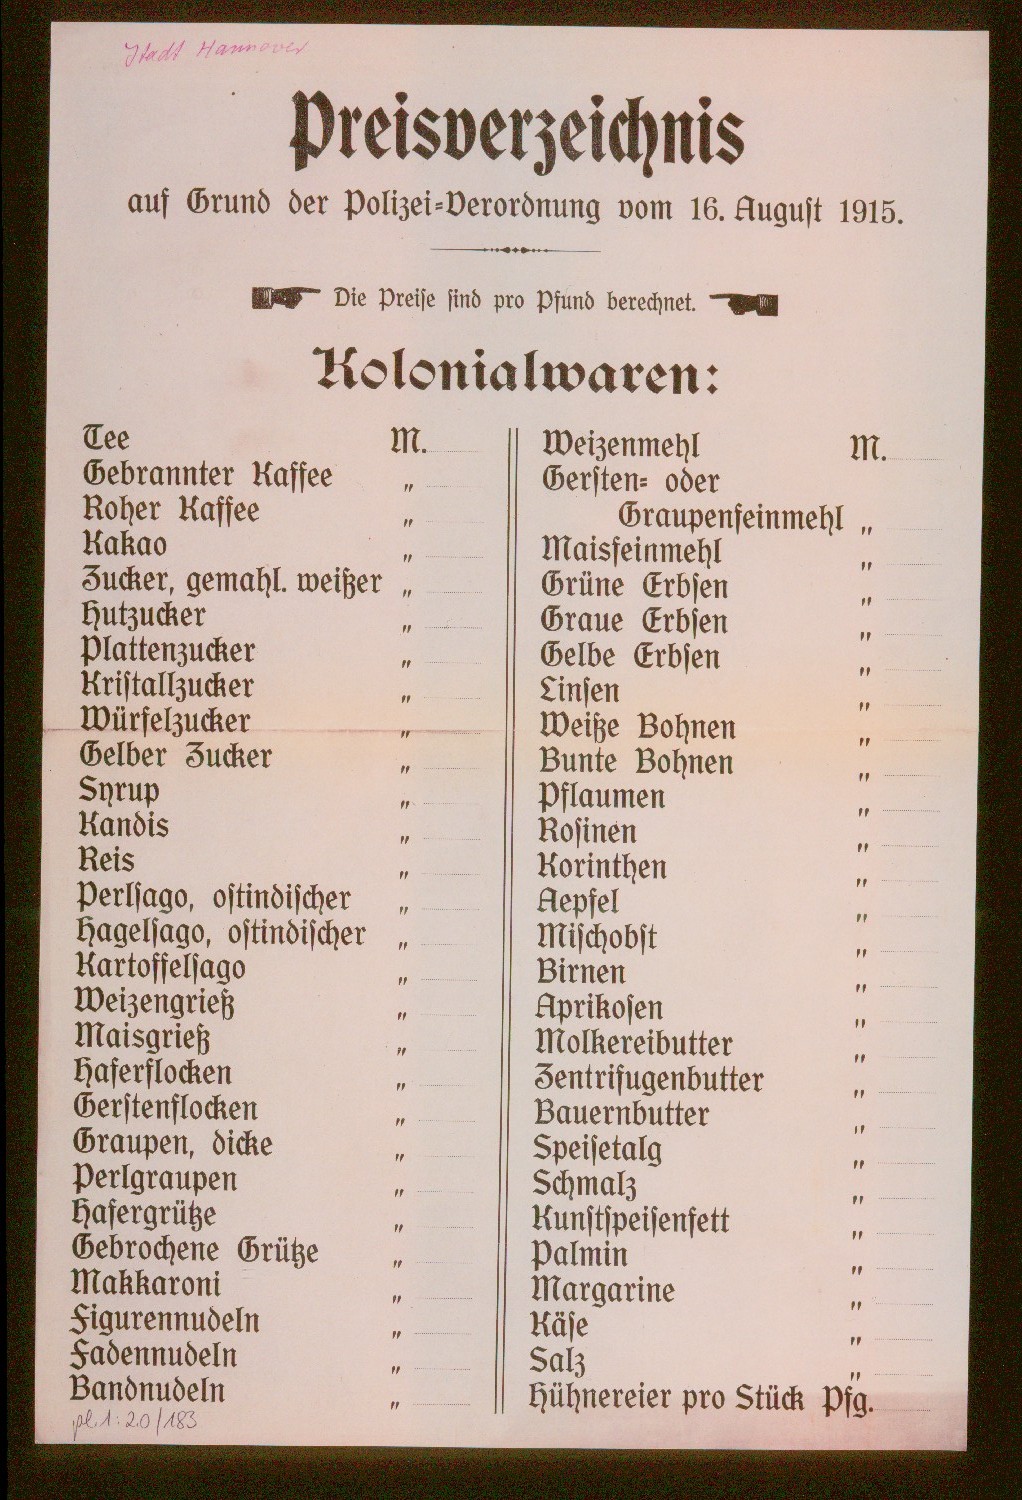 Preisverzeichnis für Kolonialwarn aus dem Jahr 1915 